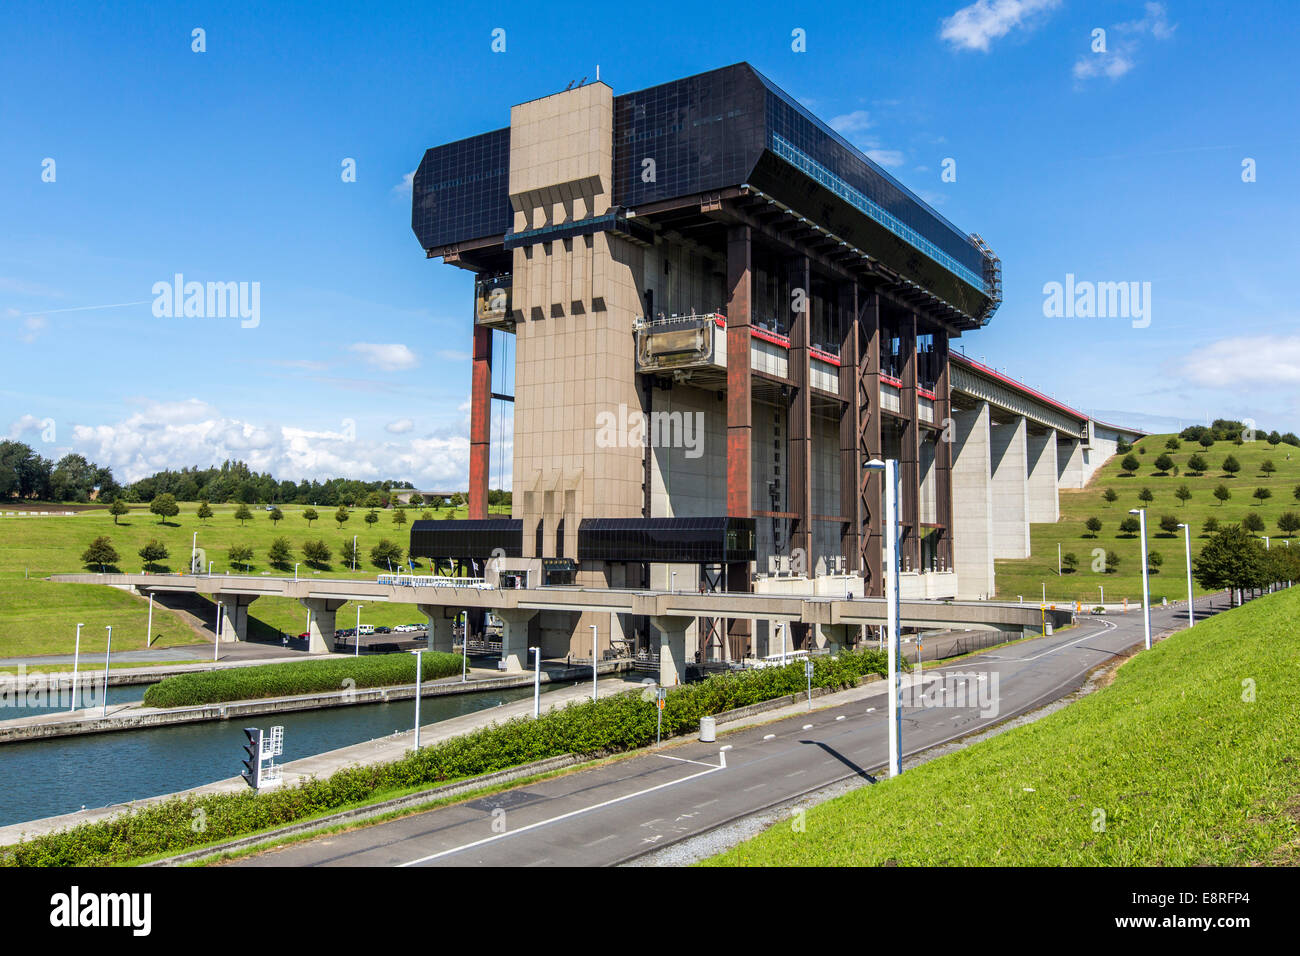 L'ascenseur à bateaux de Strepy-Thieu, sur le Canal du Centre du patrimoine mondial de l'UNESCO, Banque D'Images